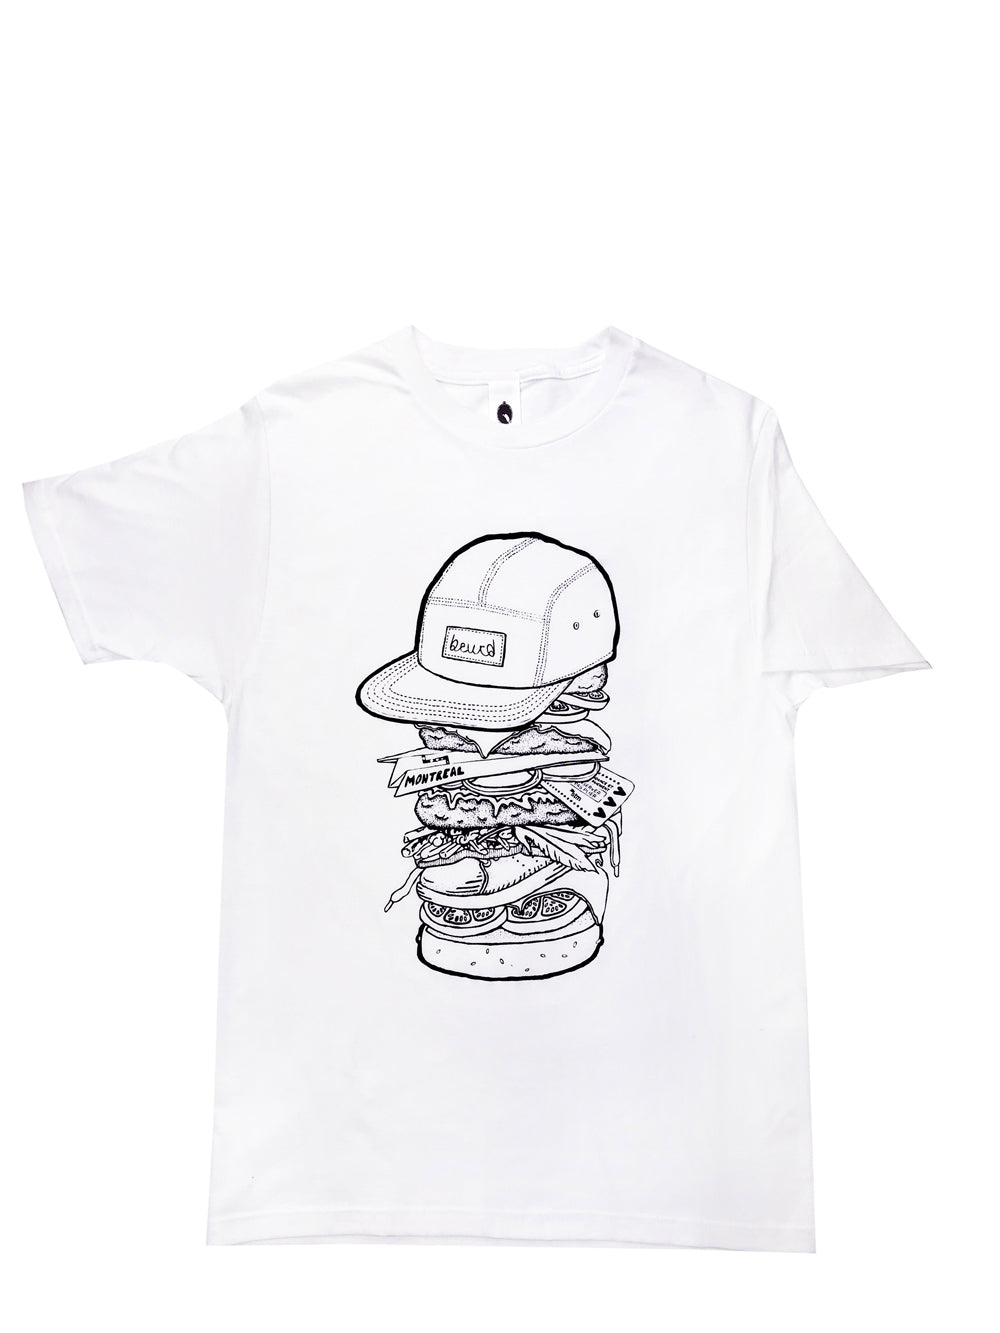 T-shirt blanc burger sérigraphié à montréal par l'équipe beurd